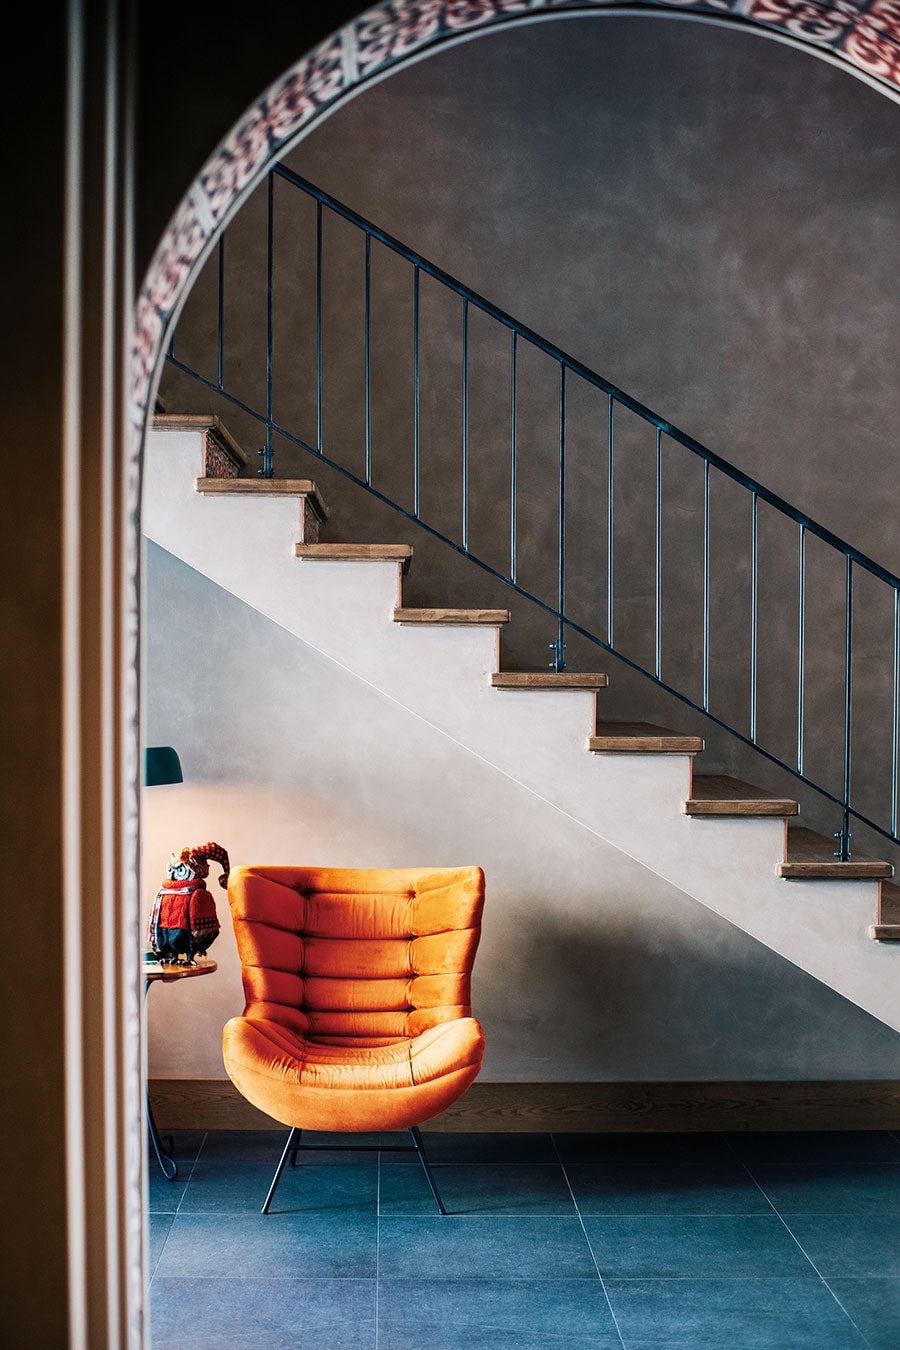 【Winerystay TRAVIGNE】思わず上りたくなるエントランス横の階段。上質だけれど華美ではなく、ホテルというよりプライベートなゲストルームに招かれたような空気が満ちる。Photo: Masahiro Shimazaki